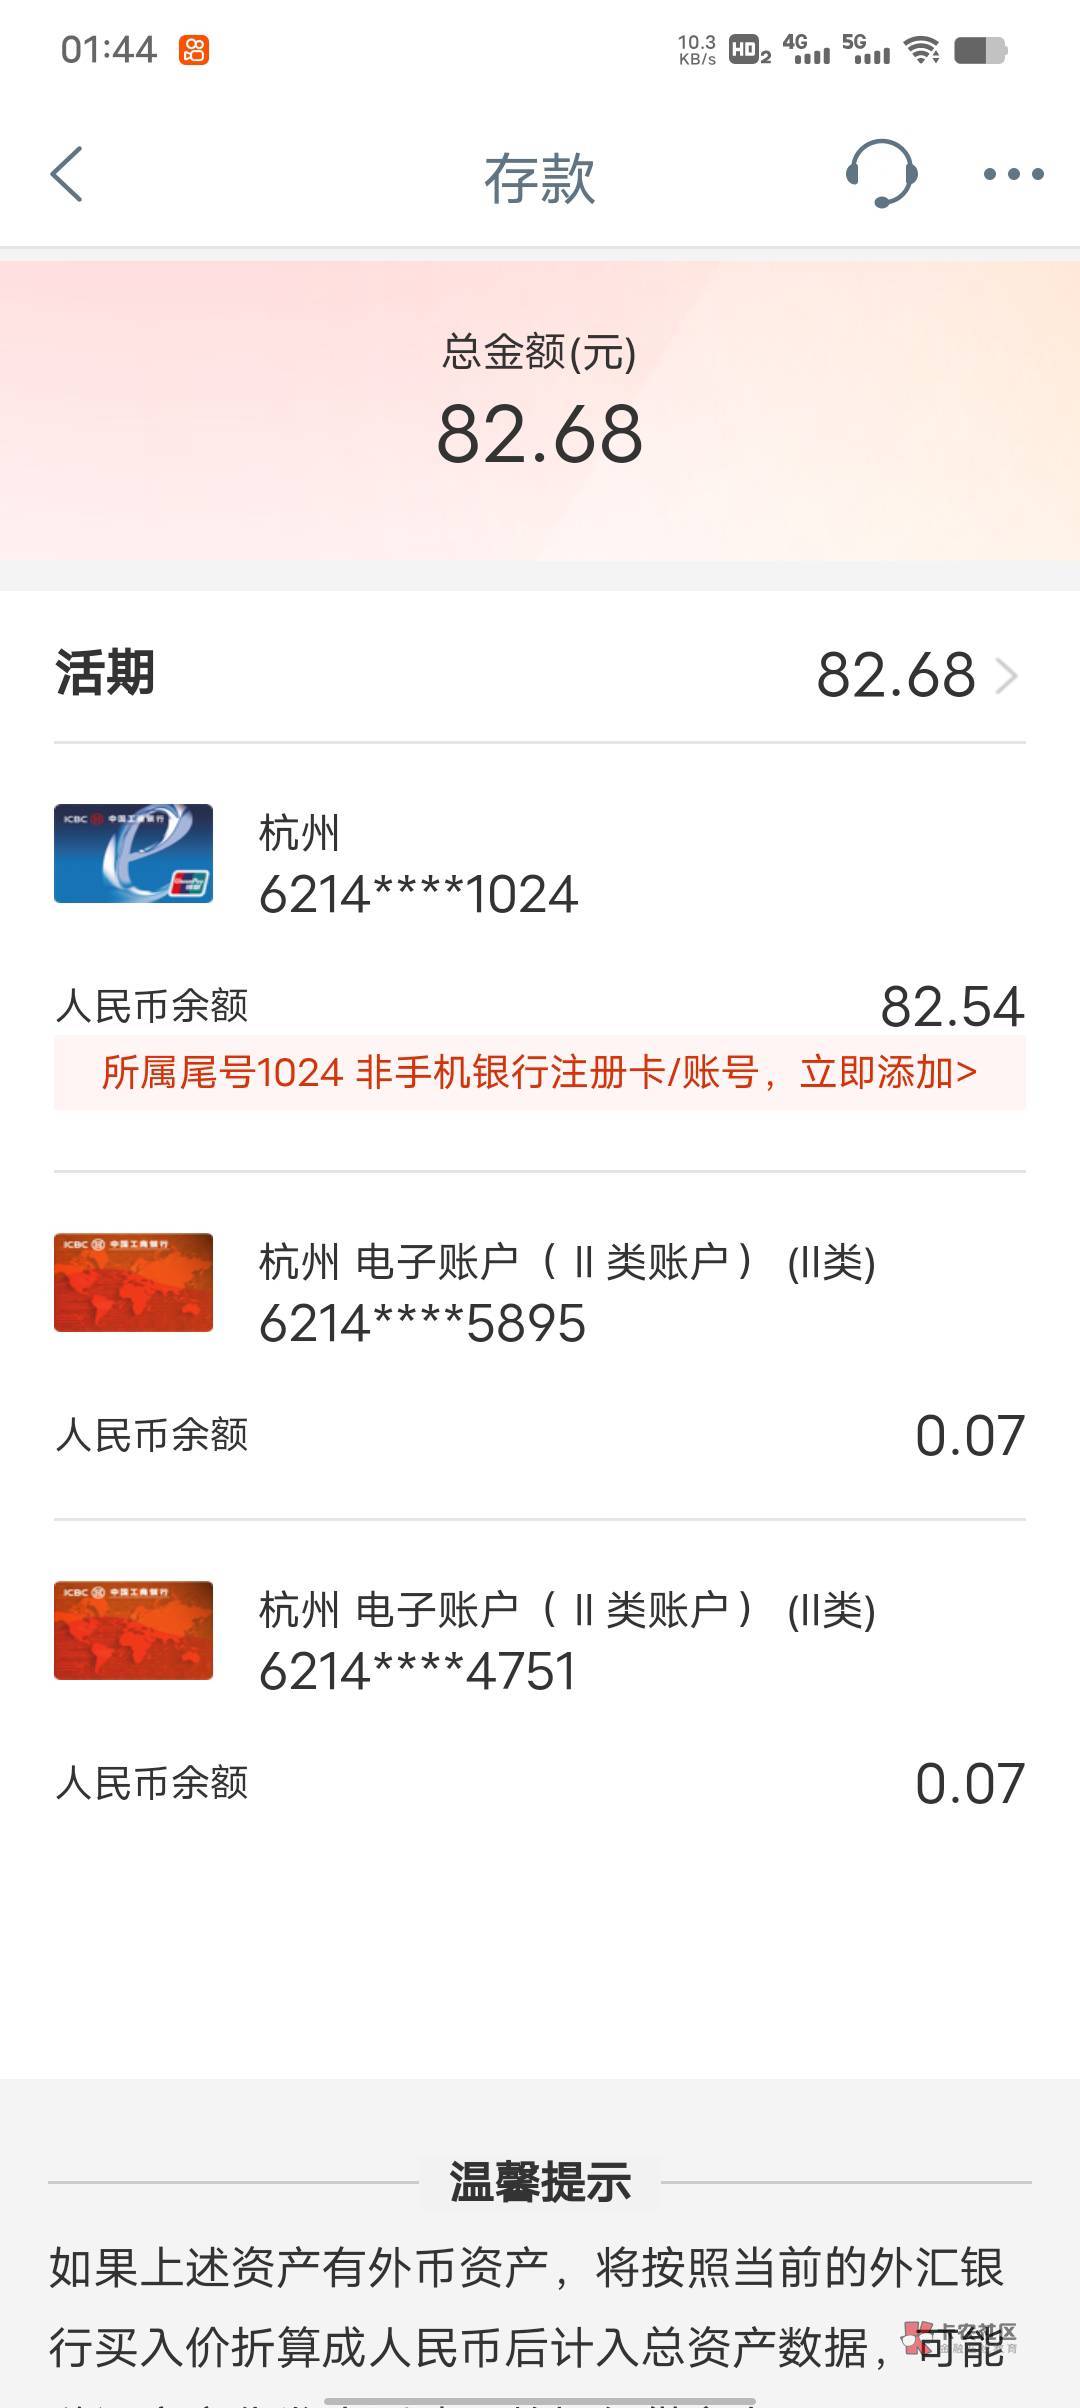 老哥们年前萌虎白卡的钱退回来我都求出来了今天看工商银行app有多出来一个杭州的卡有35 / 作者:气质佳225 / 